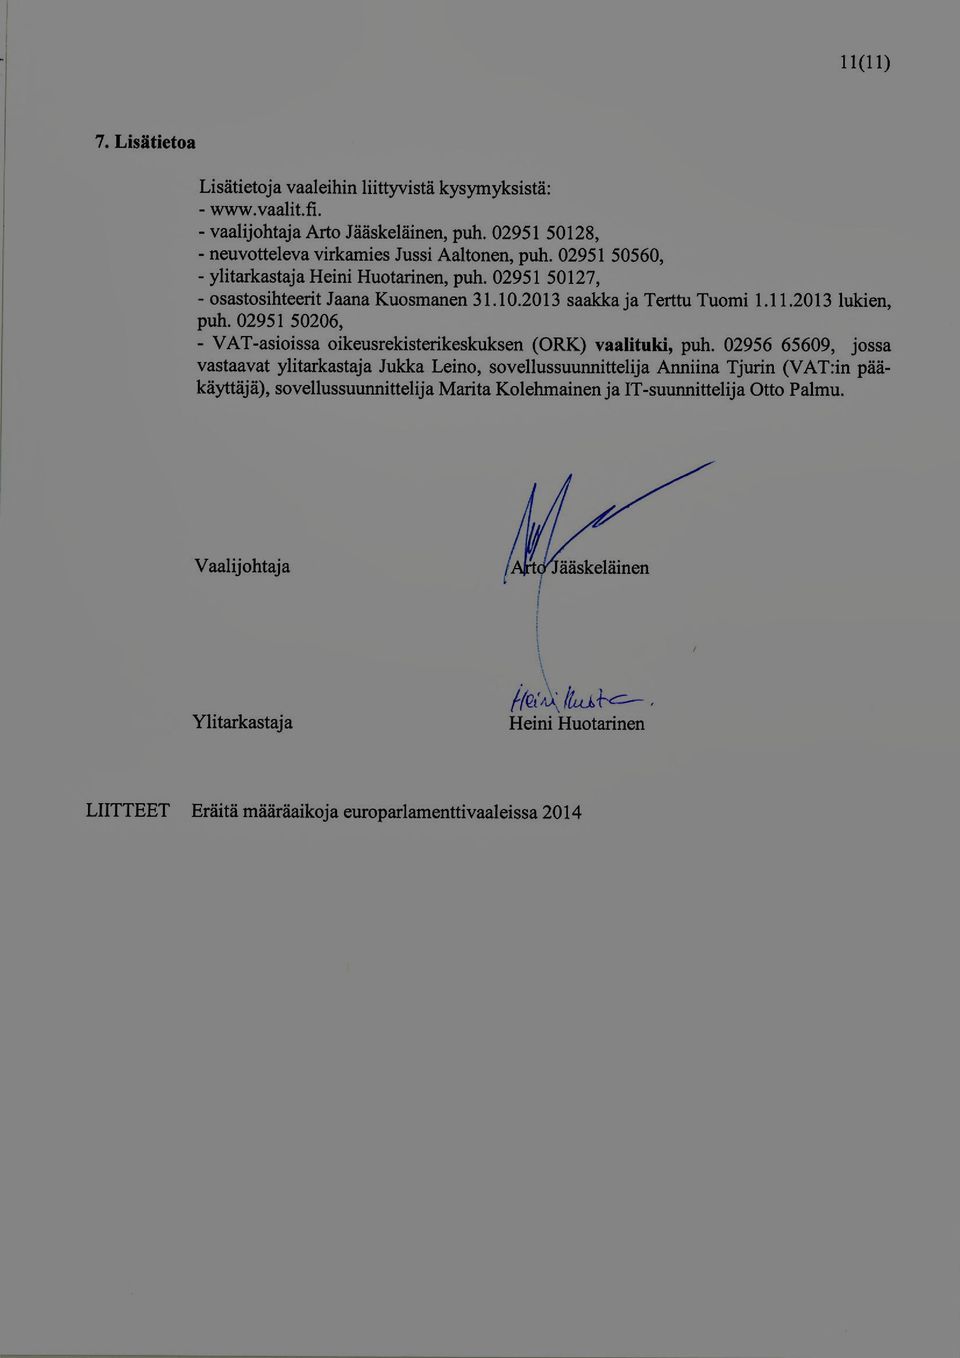 2013 saakka ja Terttu Tuomi 1.11.2013 lukien, puh. 02951 50206, - VAT -asioissa oikeusrekisterikeskuksen (ORK) vaalituki, puh.